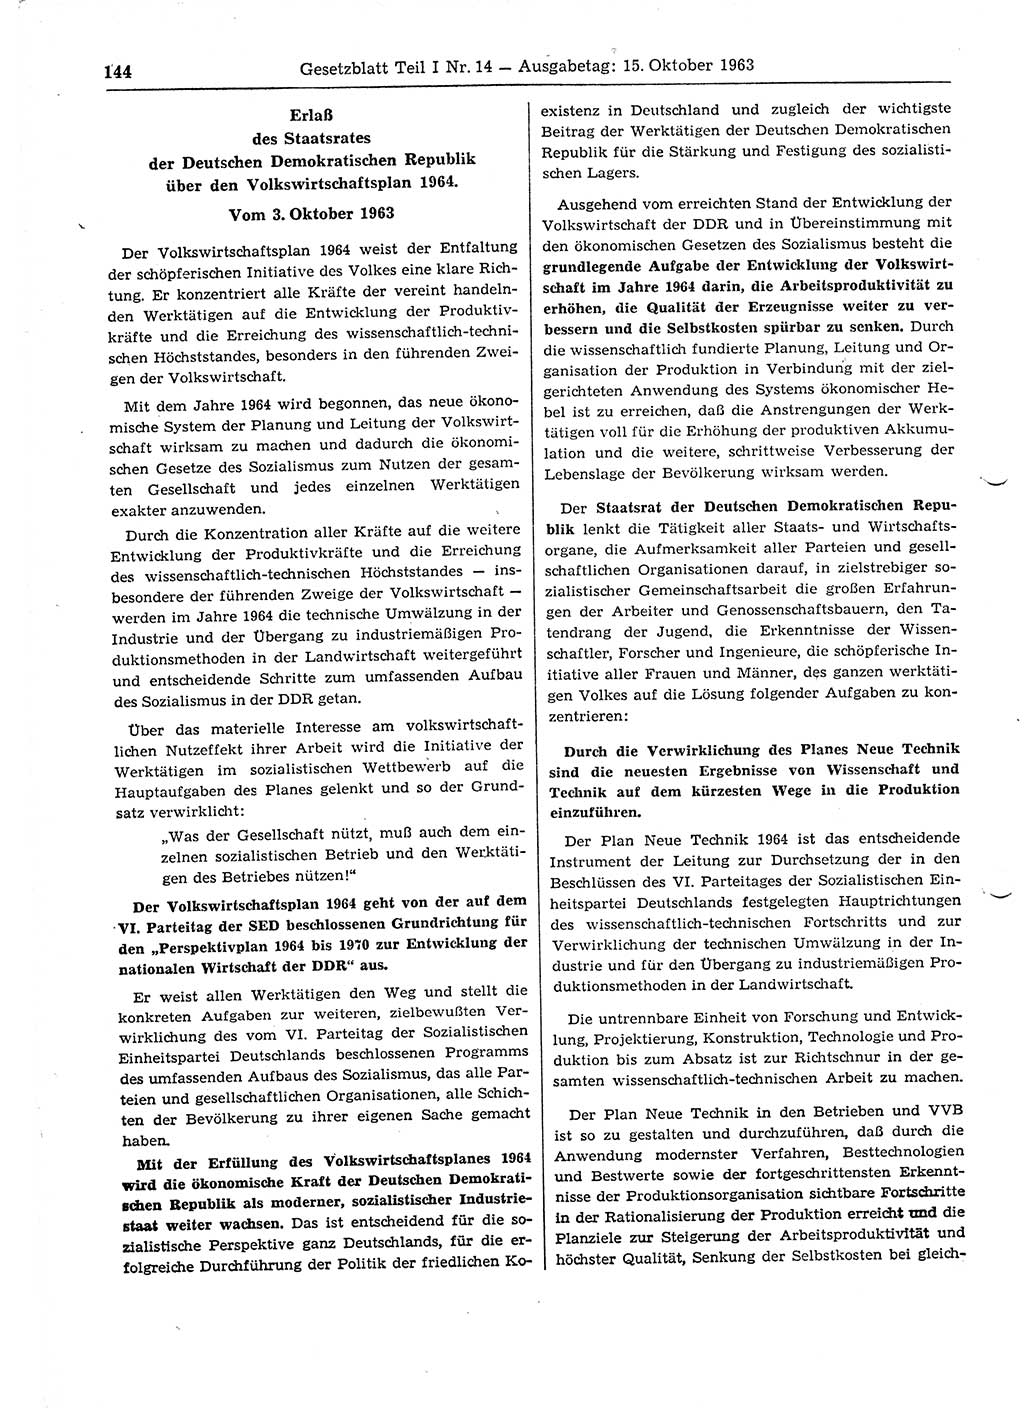 Gesetzblatt (GBl.) der Deutschen Demokratischen Republik (DDR) Teil Ⅰ 1963, Seite 144 (GBl. DDR Ⅰ 1963, S. 144)